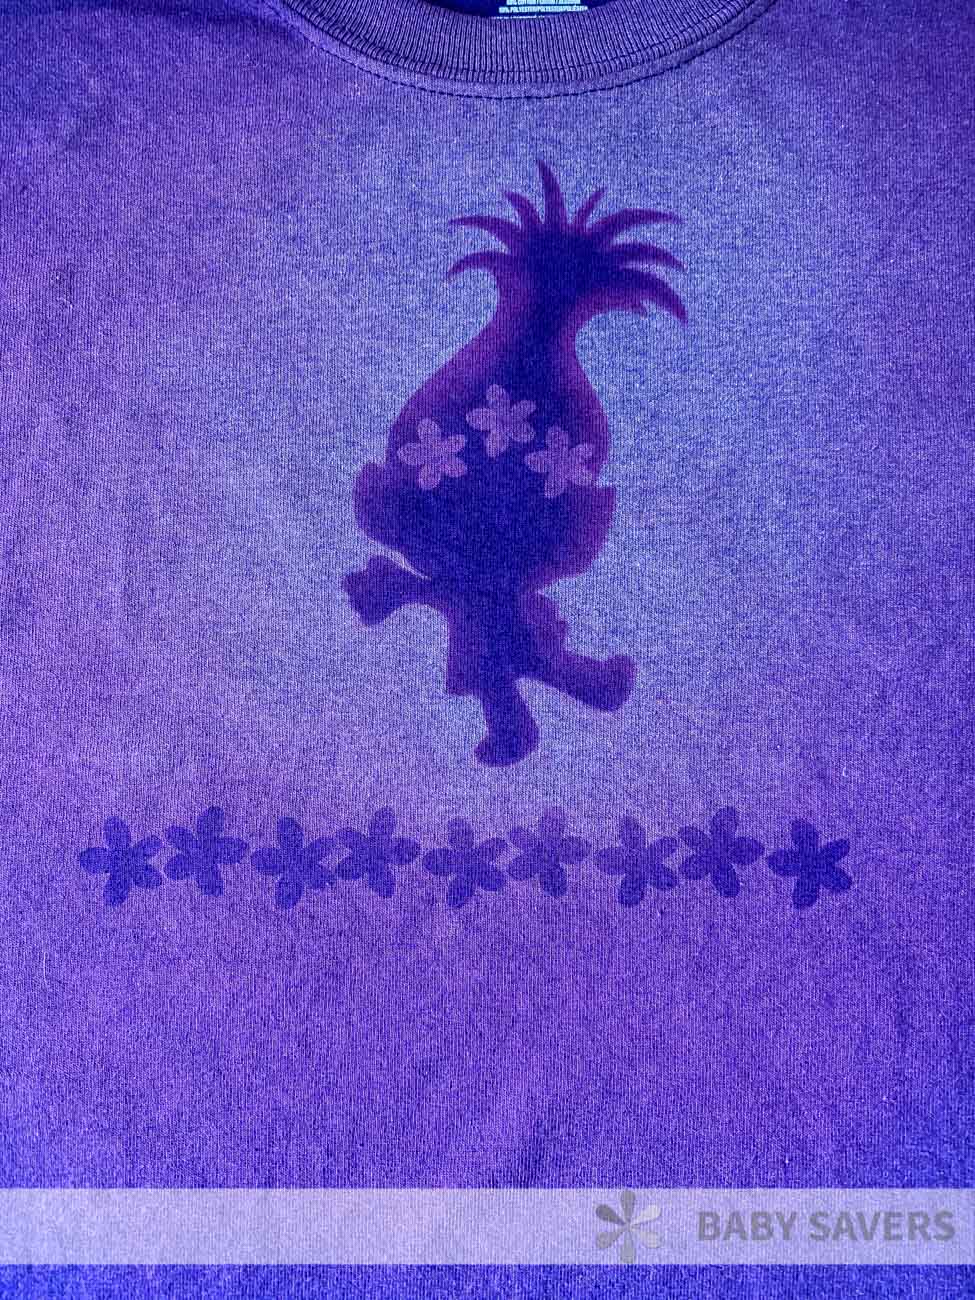 Bleach dye pattern of troll on a purple, mottled shirt